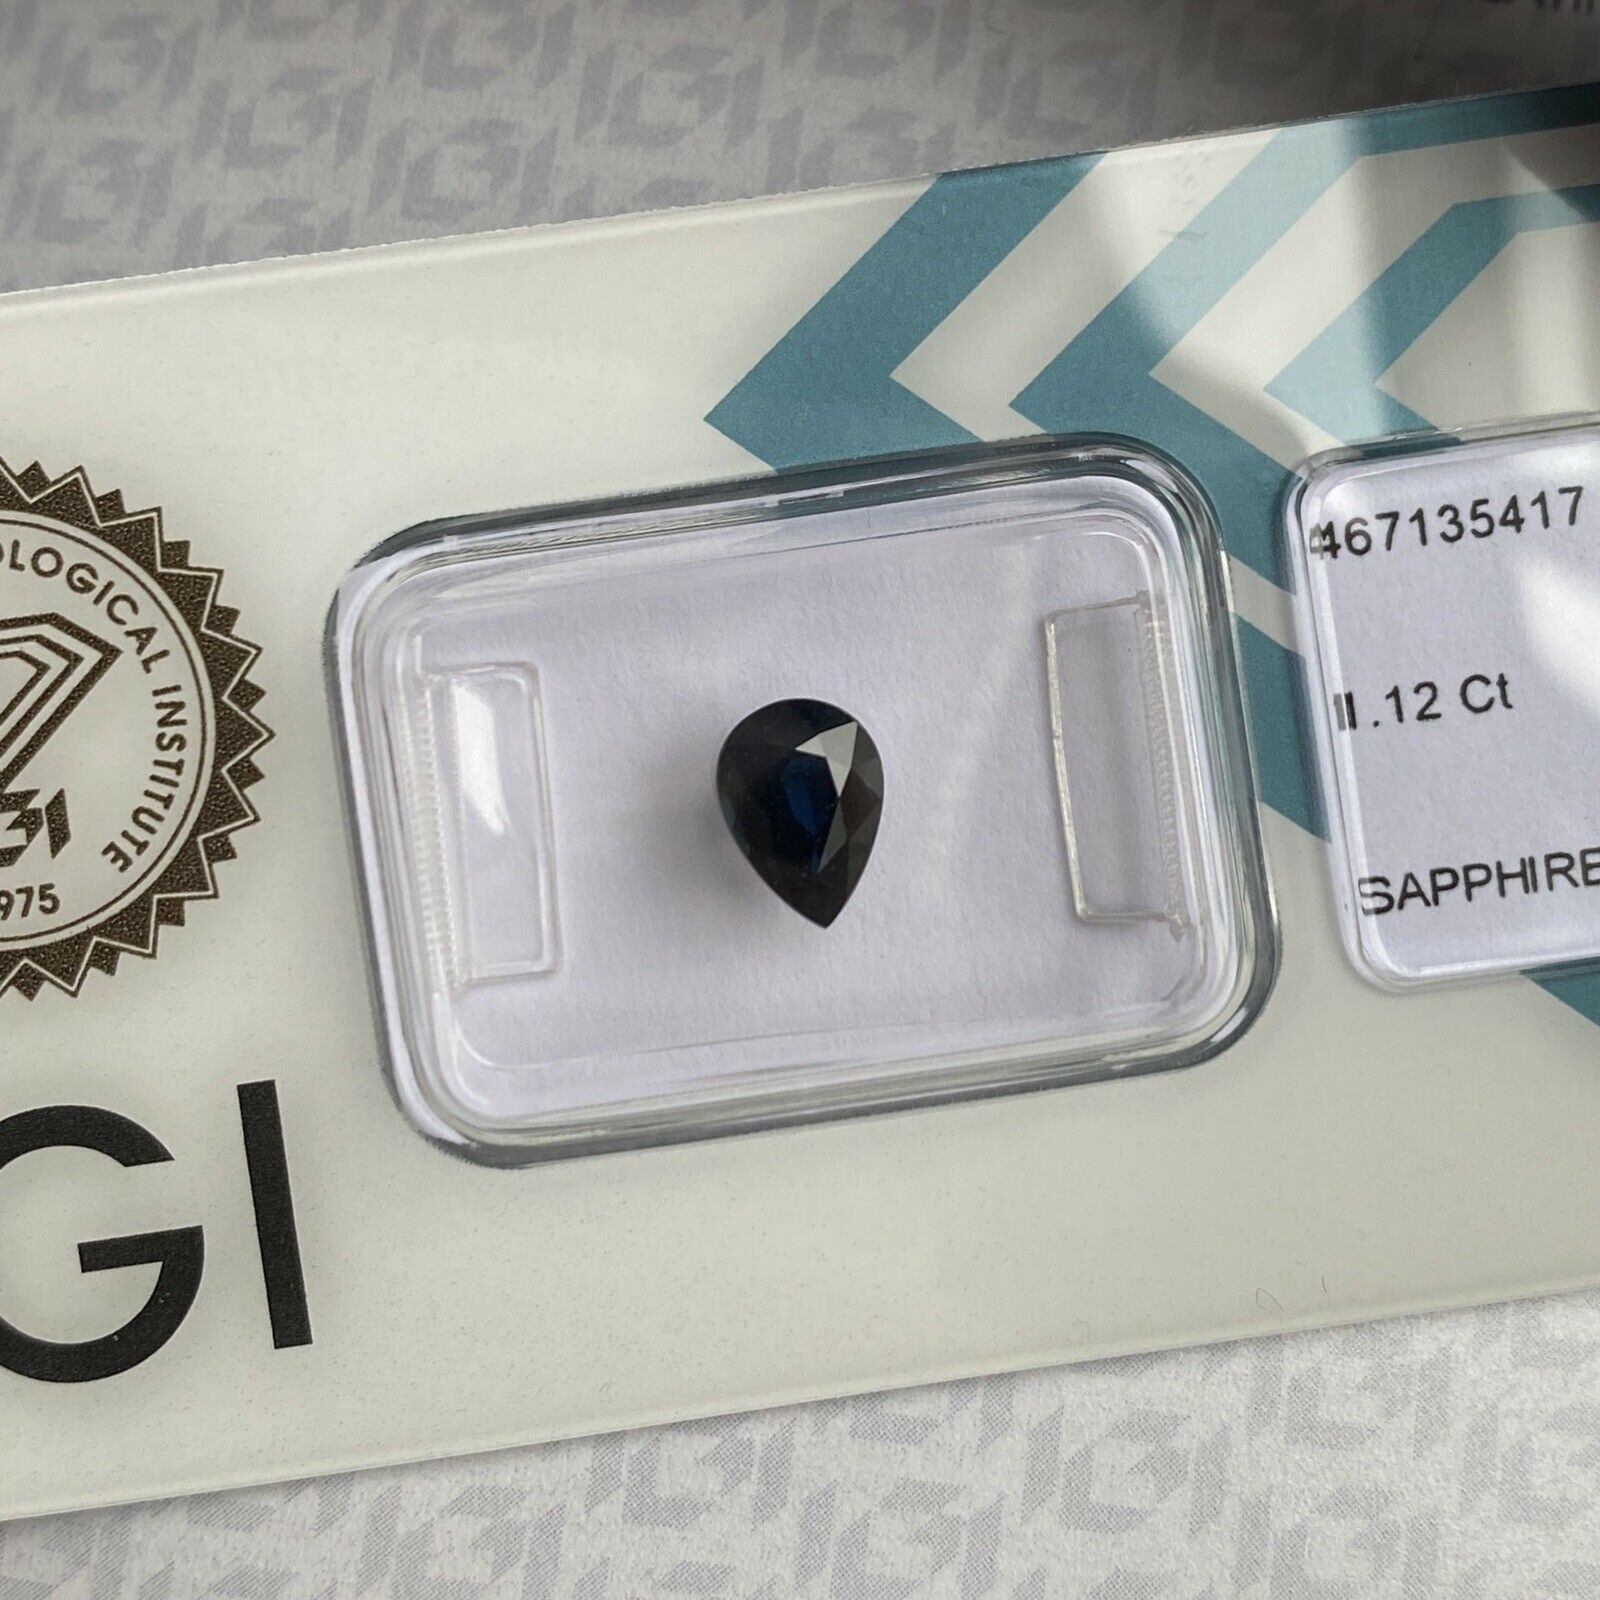 1.12ct Deep Blue Sapphire Pear Teardrop Cut IGI Certified Loose Rare Gem For Sale